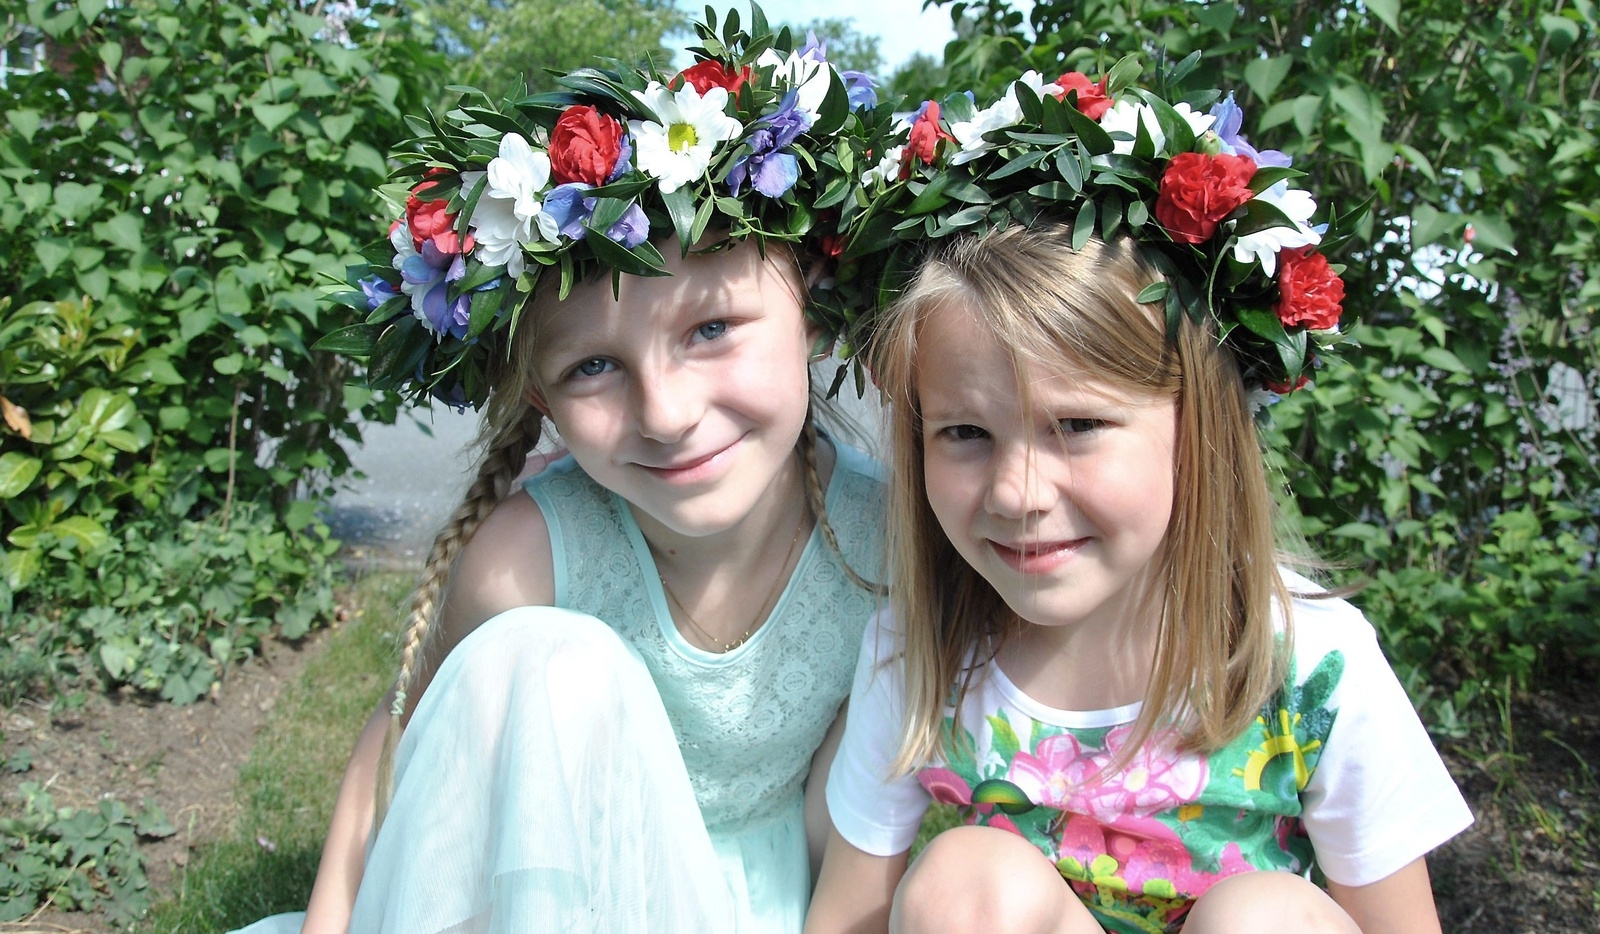 Sommar och sol, med blommor i håret och blommor under kudden! Lovis Gustafsson och Isabelle Höghäll är redo att fira midsommar.
Foto: Marie Strömberg Andersson